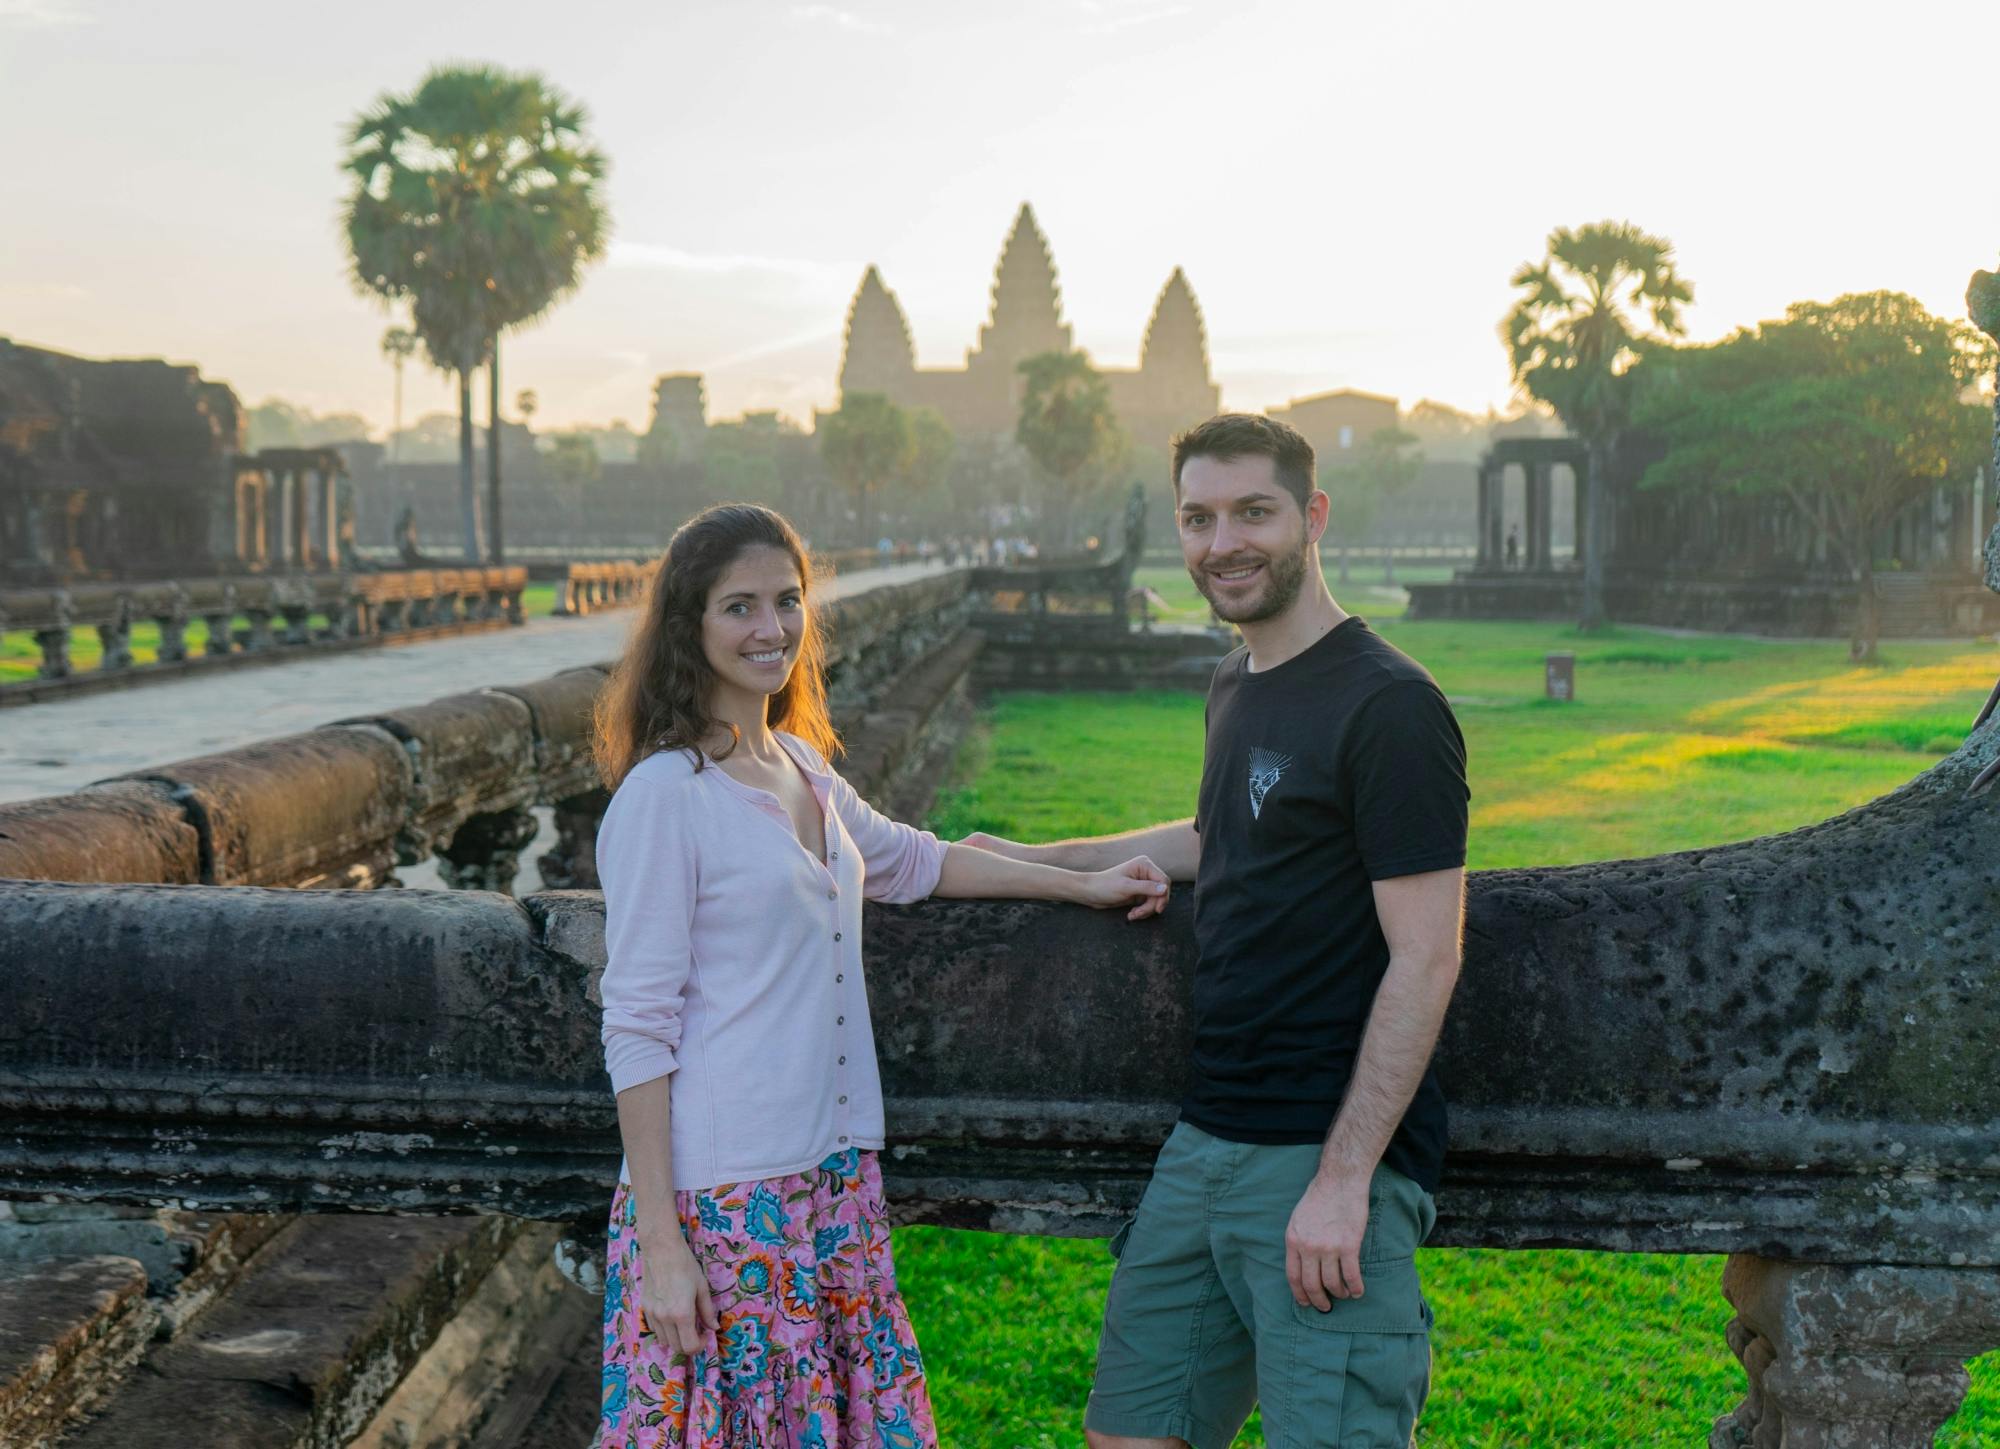 Entdecken Sie den Sonnenaufgang von Angkor mit der Vespa